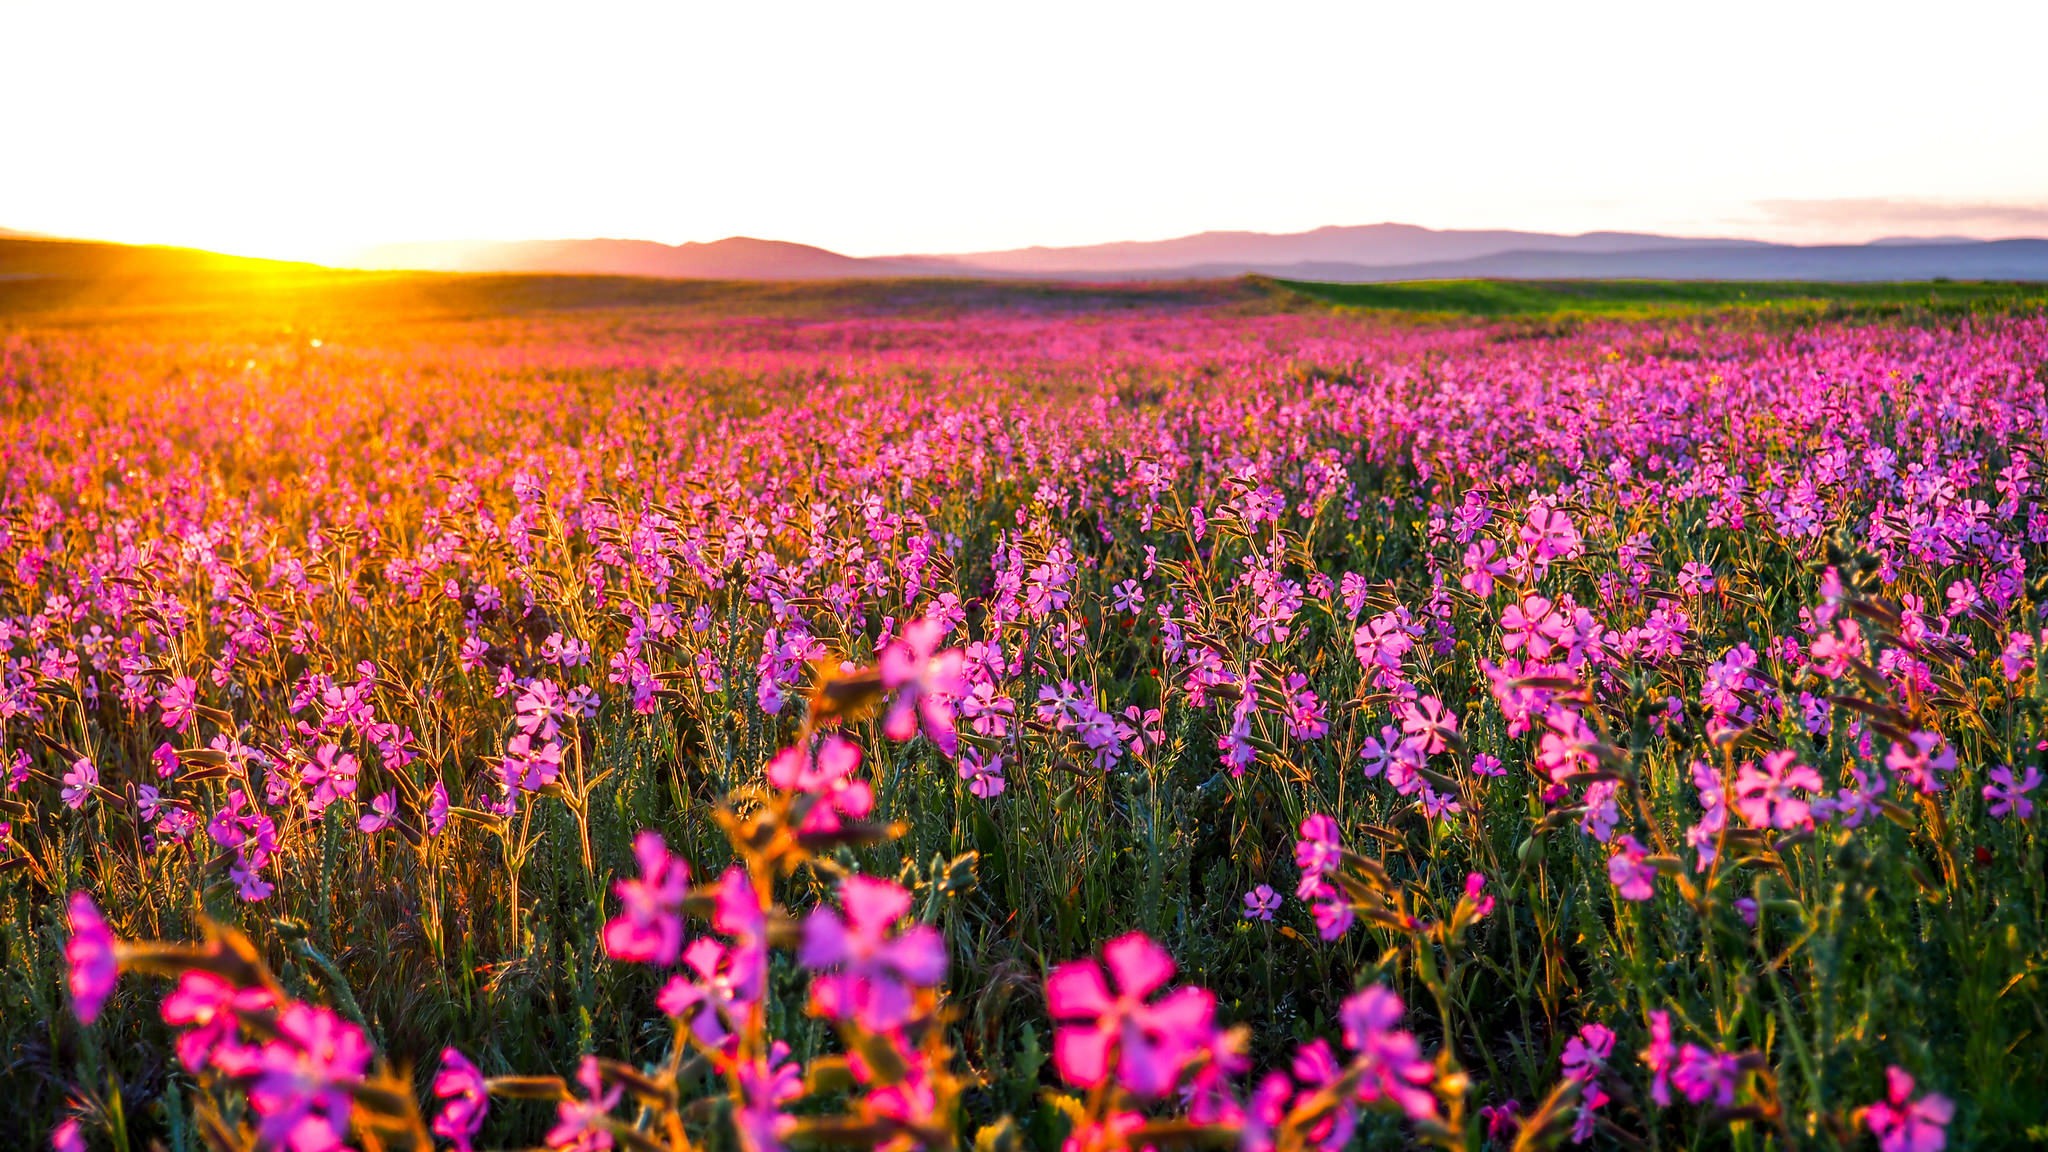 General 2048x1152 plants landscape flowers field sunlight pink flowers